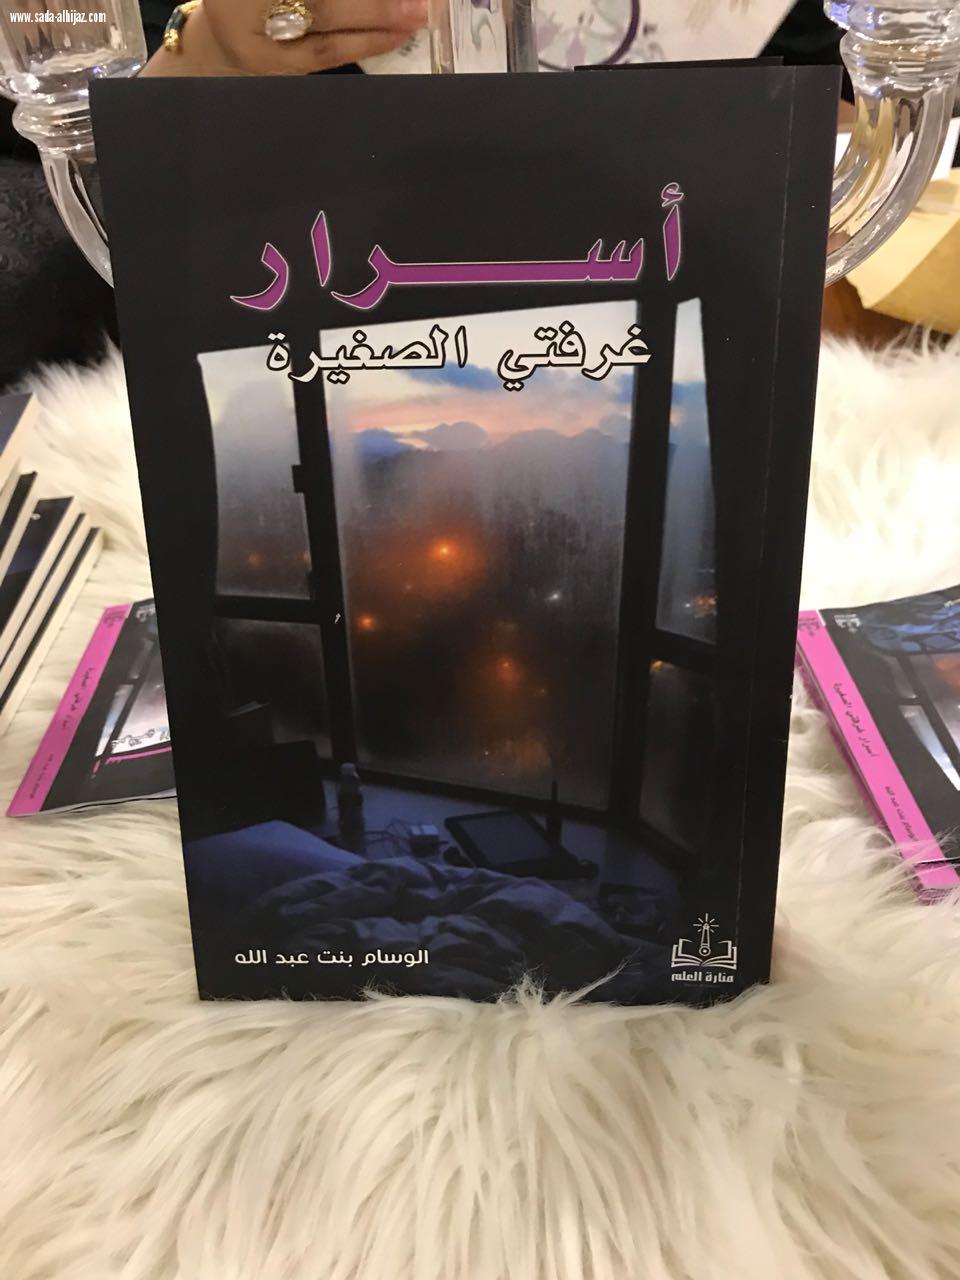 النادي الادبي بالمدينة يقيم لقاء لقراءة في كتاب الكاتبة والشاعرة الوسام عبدالله (أسرار غرفتي الصغيرة)